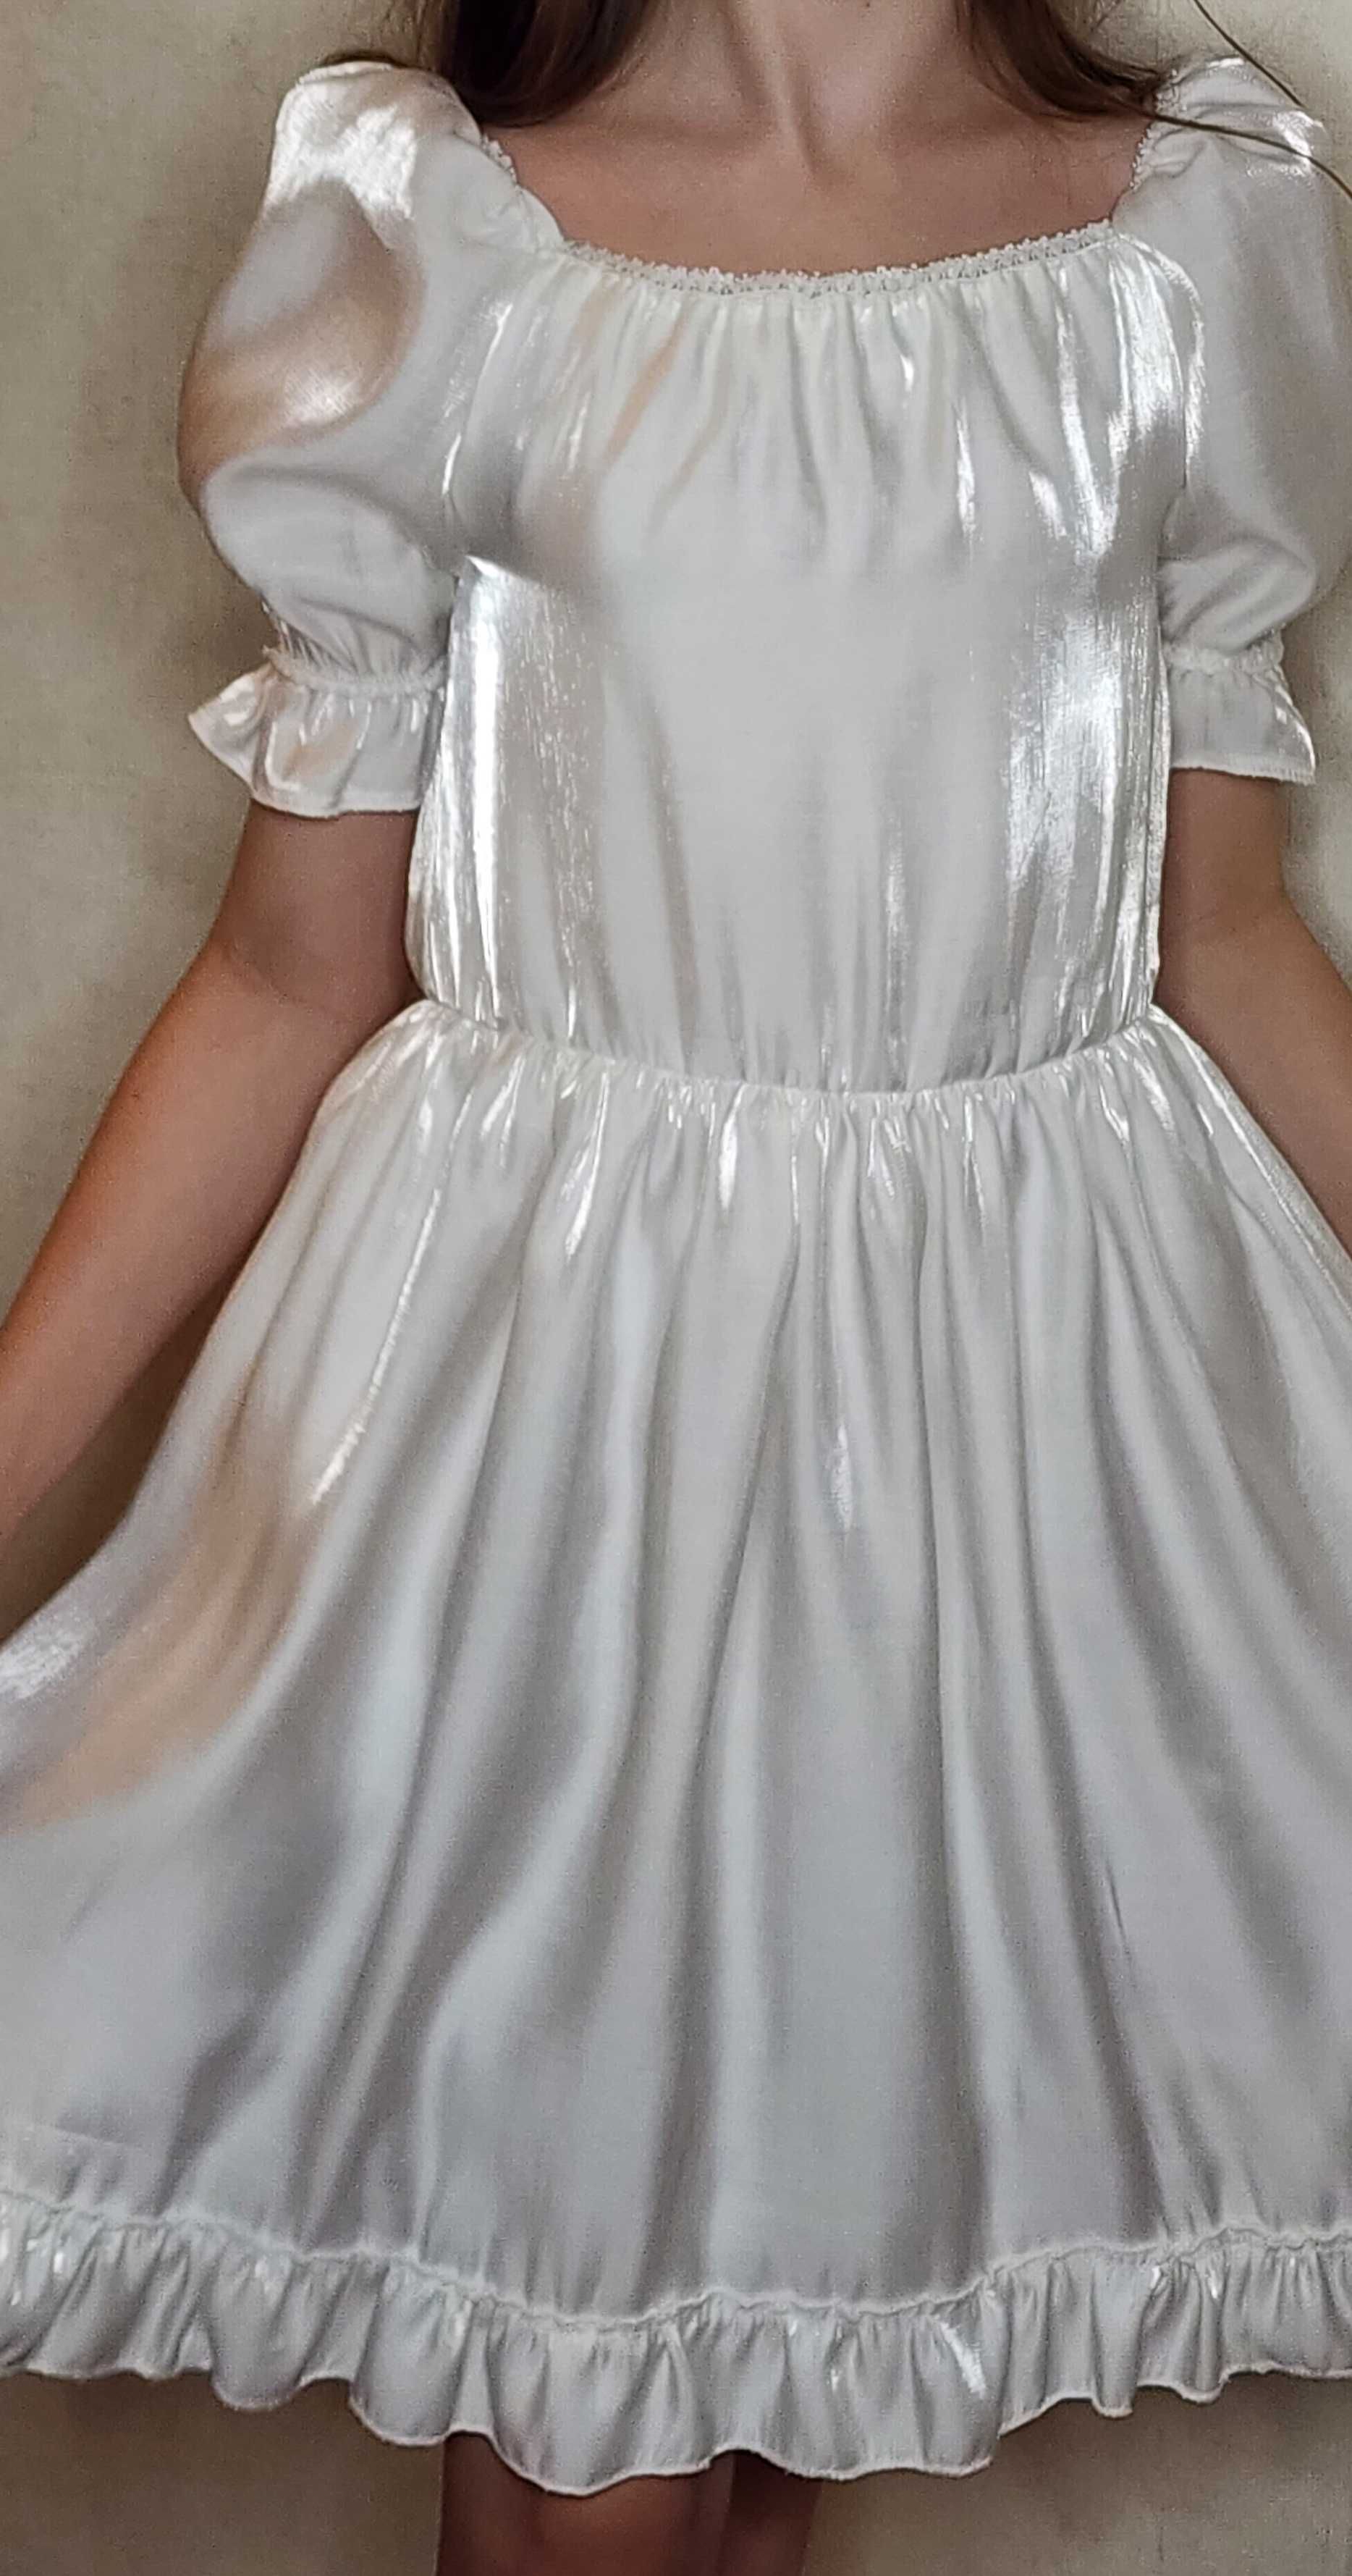 Платье для девочки белого цвета